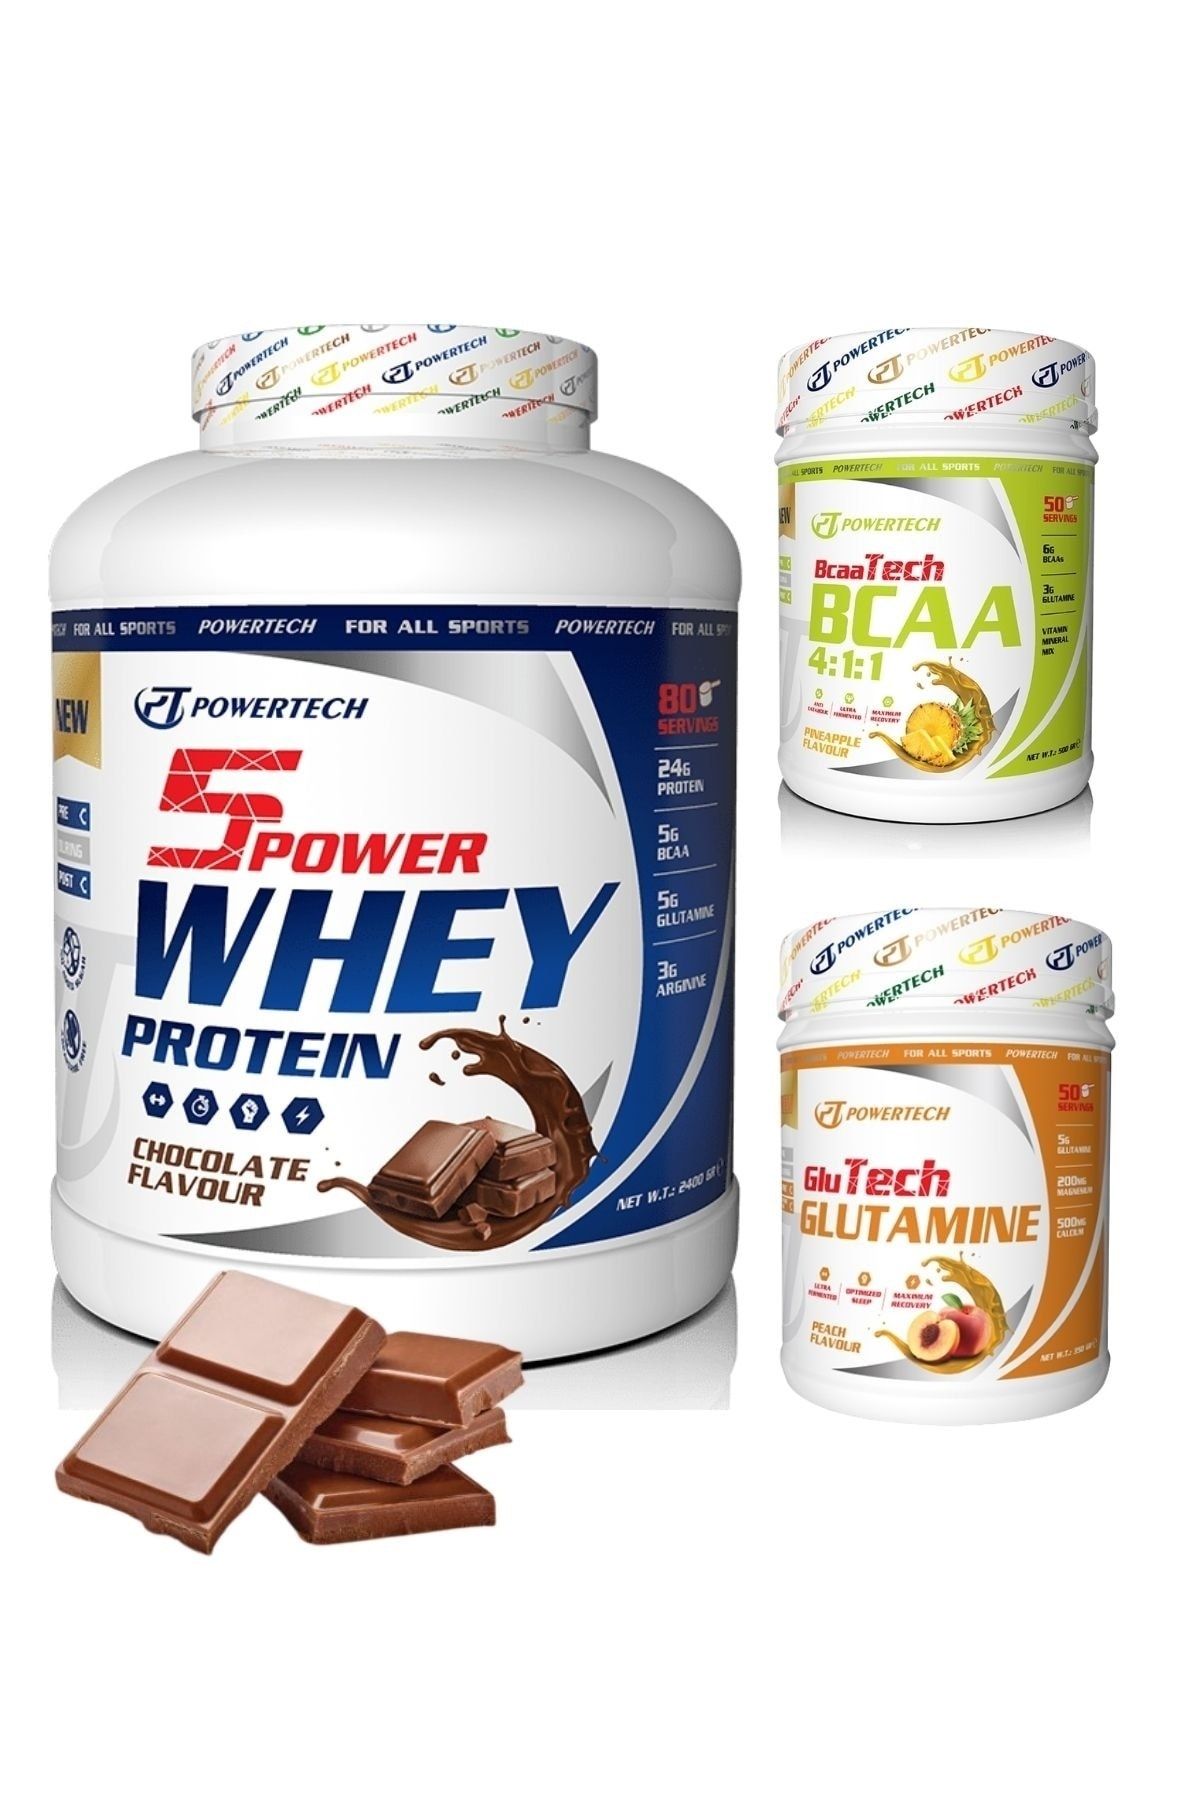 POWERTECH 5 Power Whey Protein Tozu 80 Servis Çikolata Bcaa 50 Servis Glutamine 50 Servis